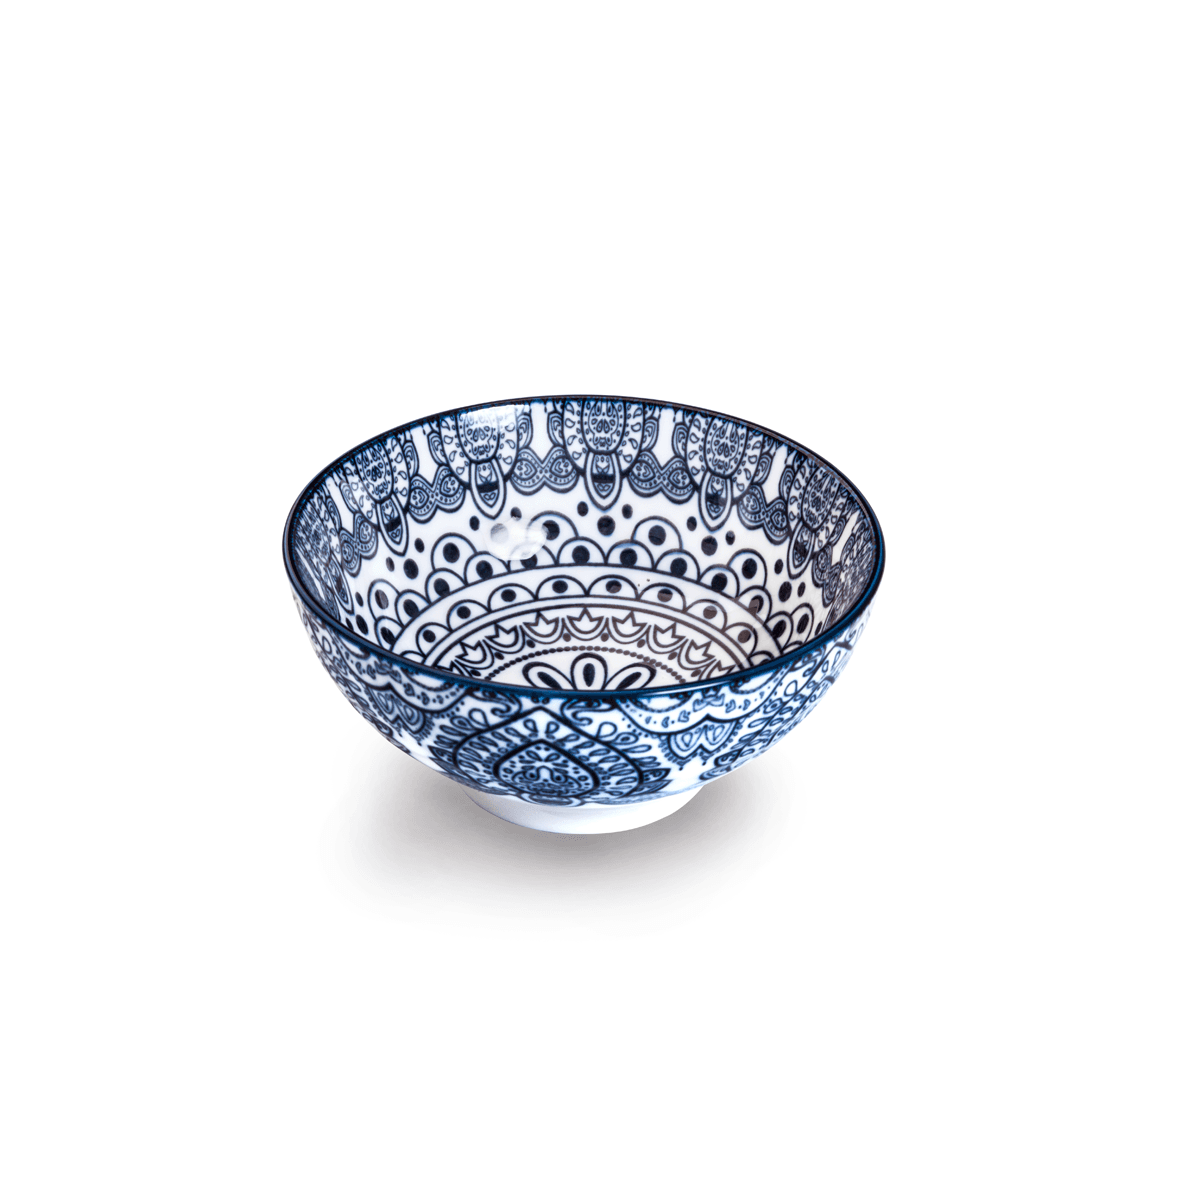 Che Brucia Arabesque Blue Porcelain Bowl 12 cm / 5" Blue Ivory Porcelain